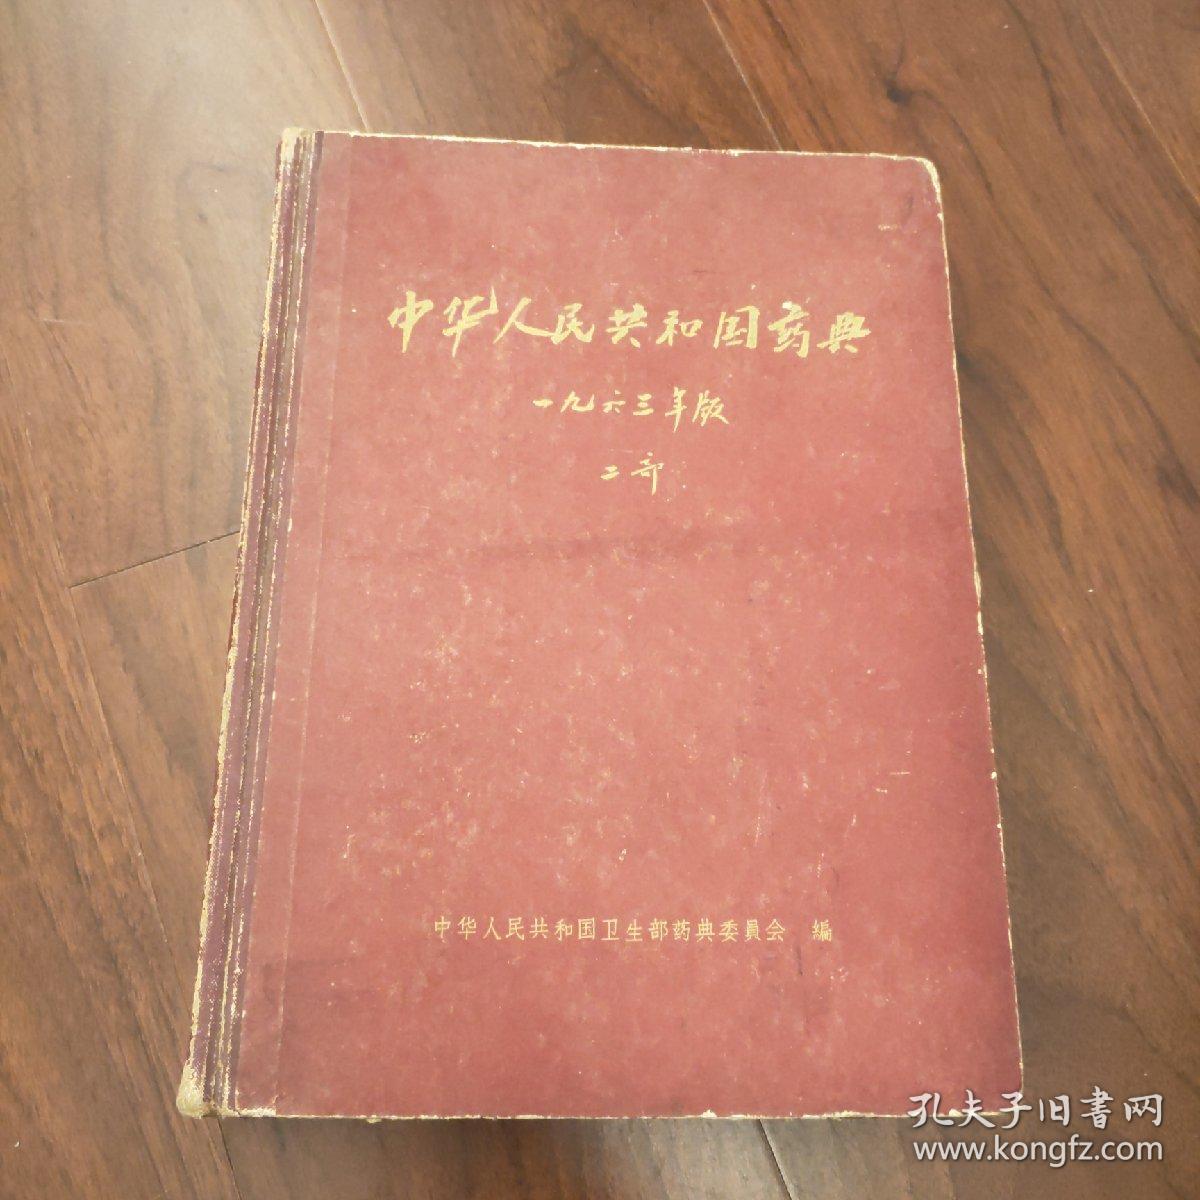 中华人民共和国药典:一九六三年版.二部